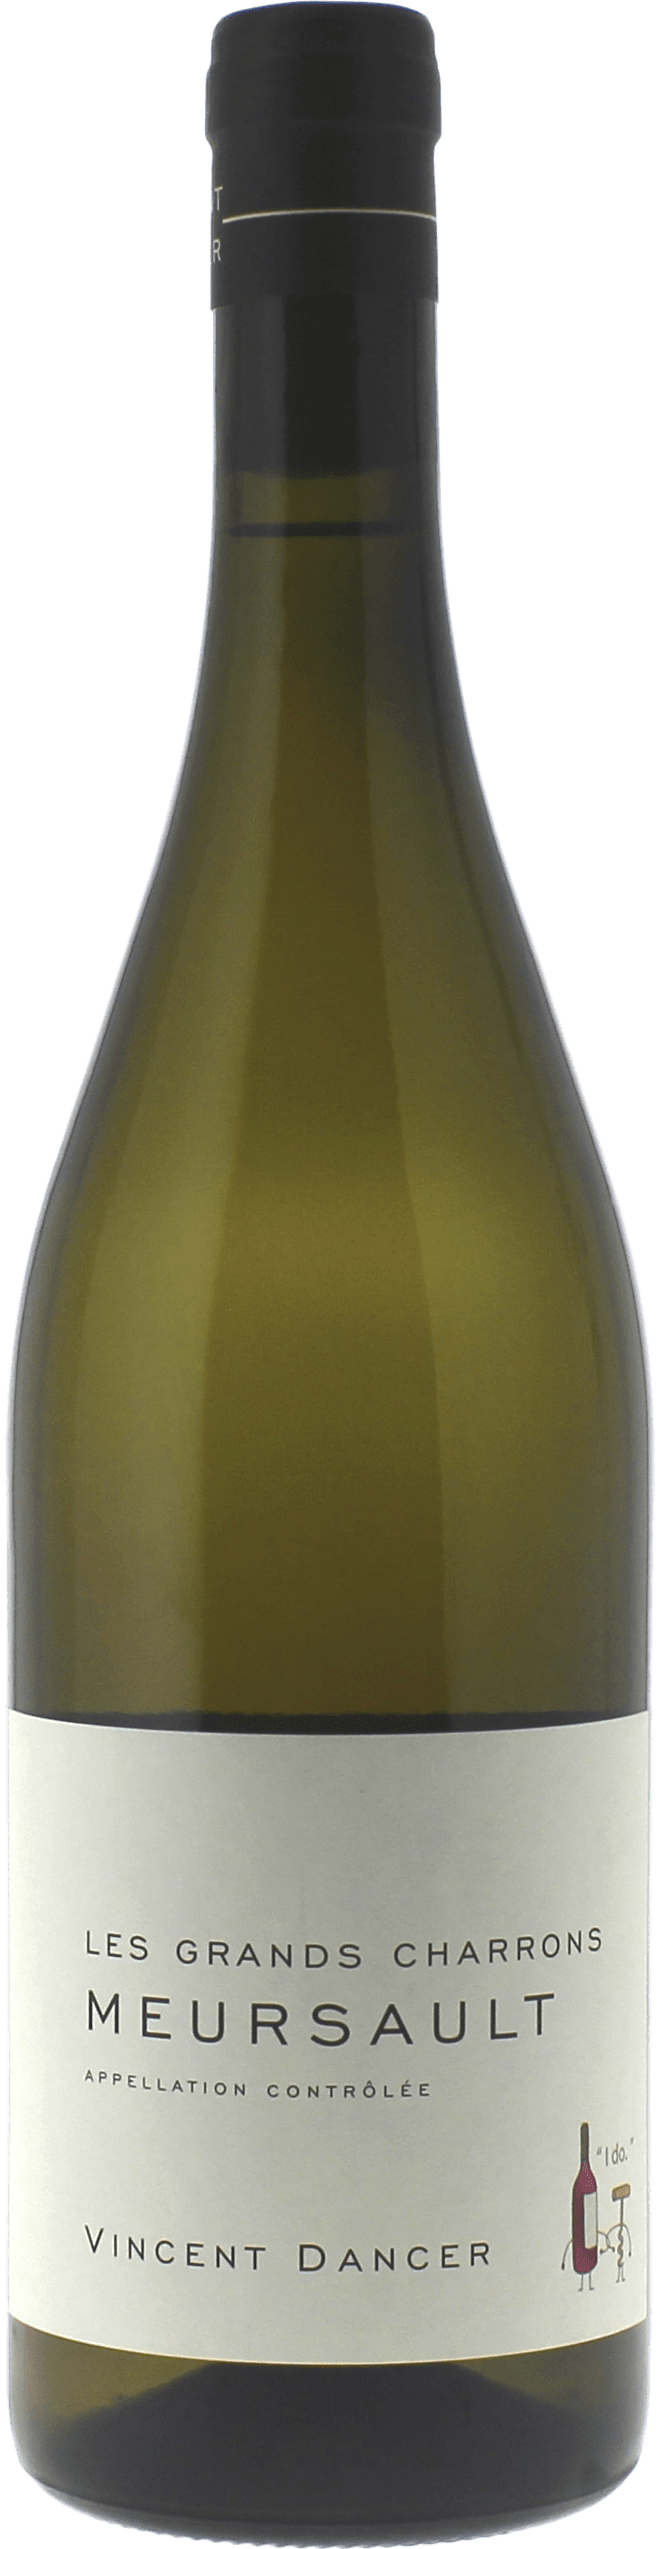 Meursault grands charrons 2016 Domaine DANCER, Bourgogne blanc